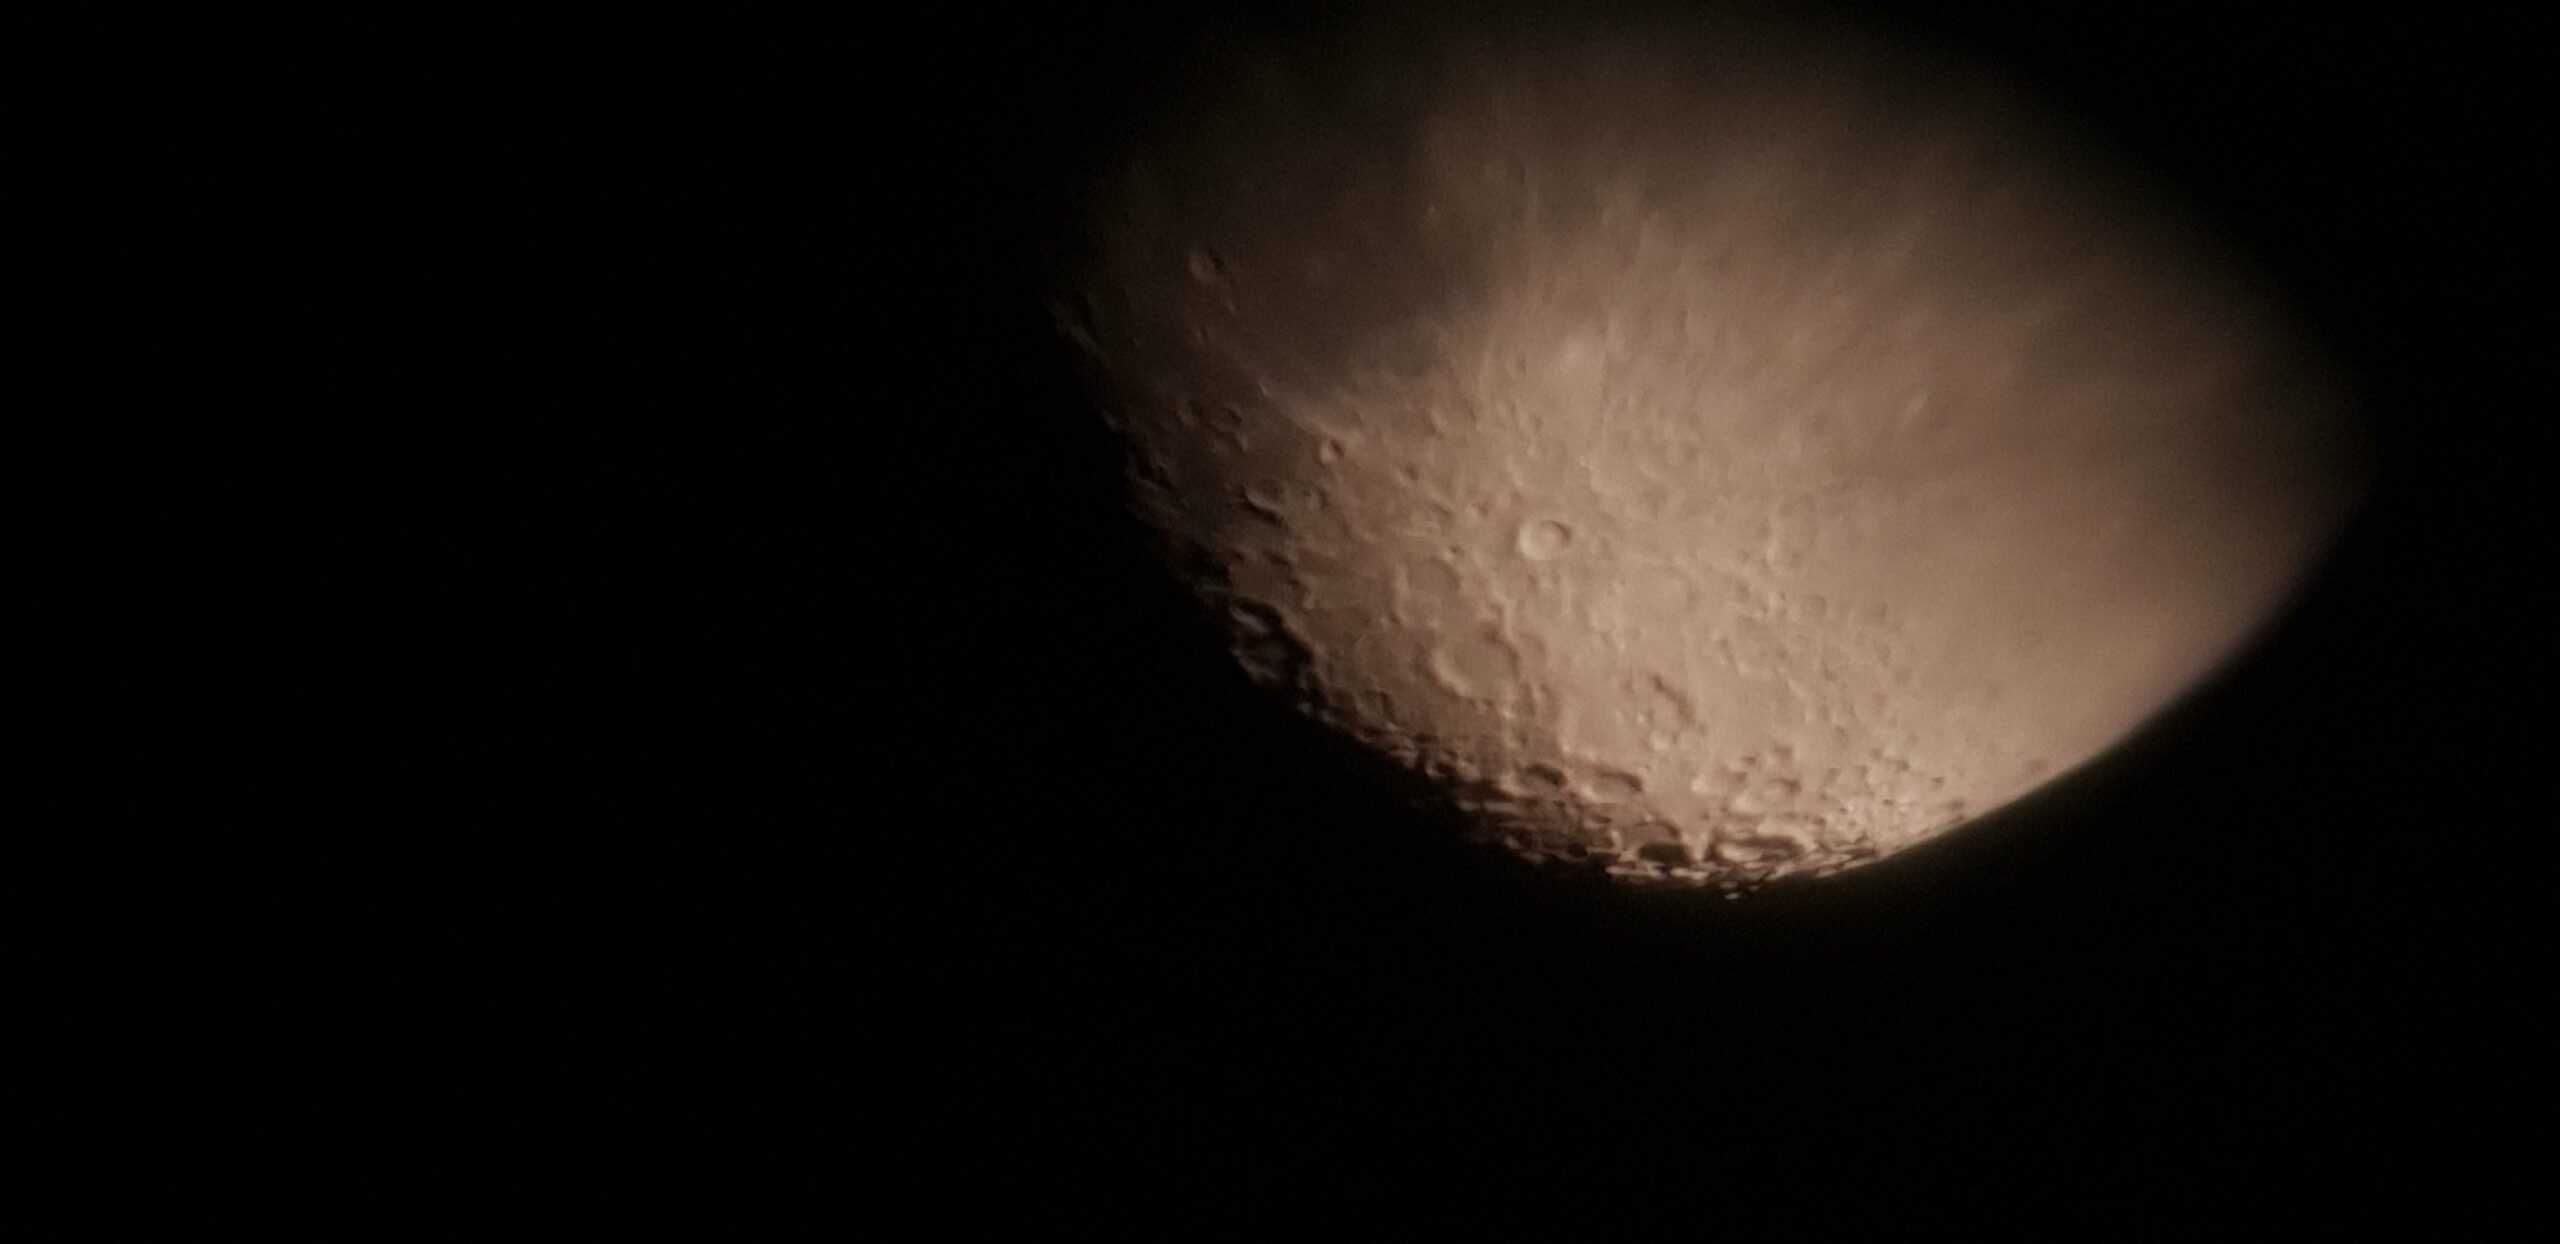 La Lune avec un Smartphone ! - Astrophotographie - Webastro